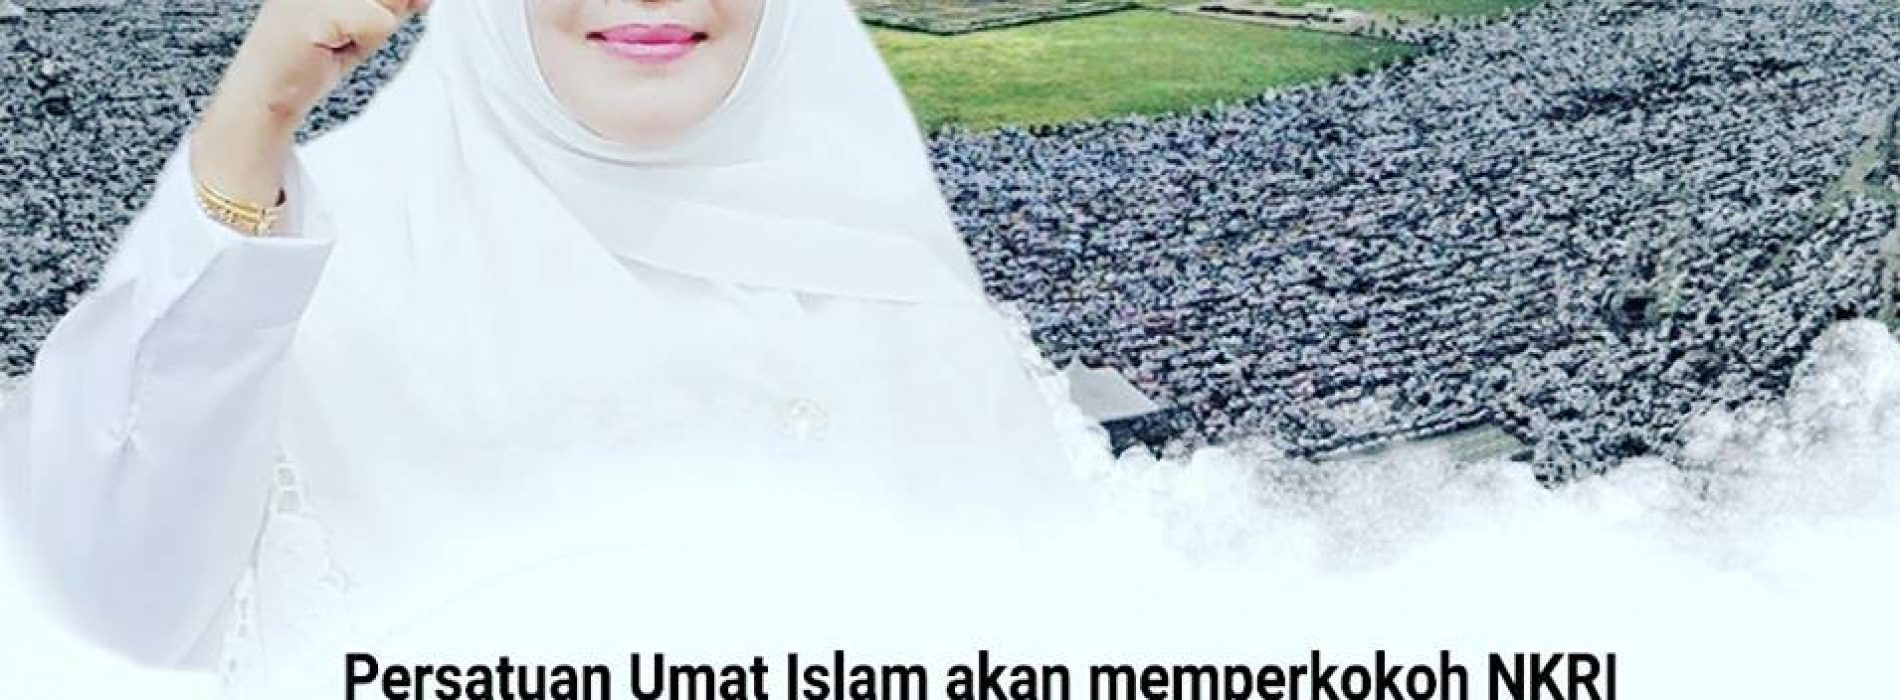 Fahira Idris : Reuni Akbar 212 pengingat bagi umat Islam dan seluruh rakyat Indonesia, bahwa Indonesia tak akan goyah selama persatuan dan ukhuwah terus di jaga